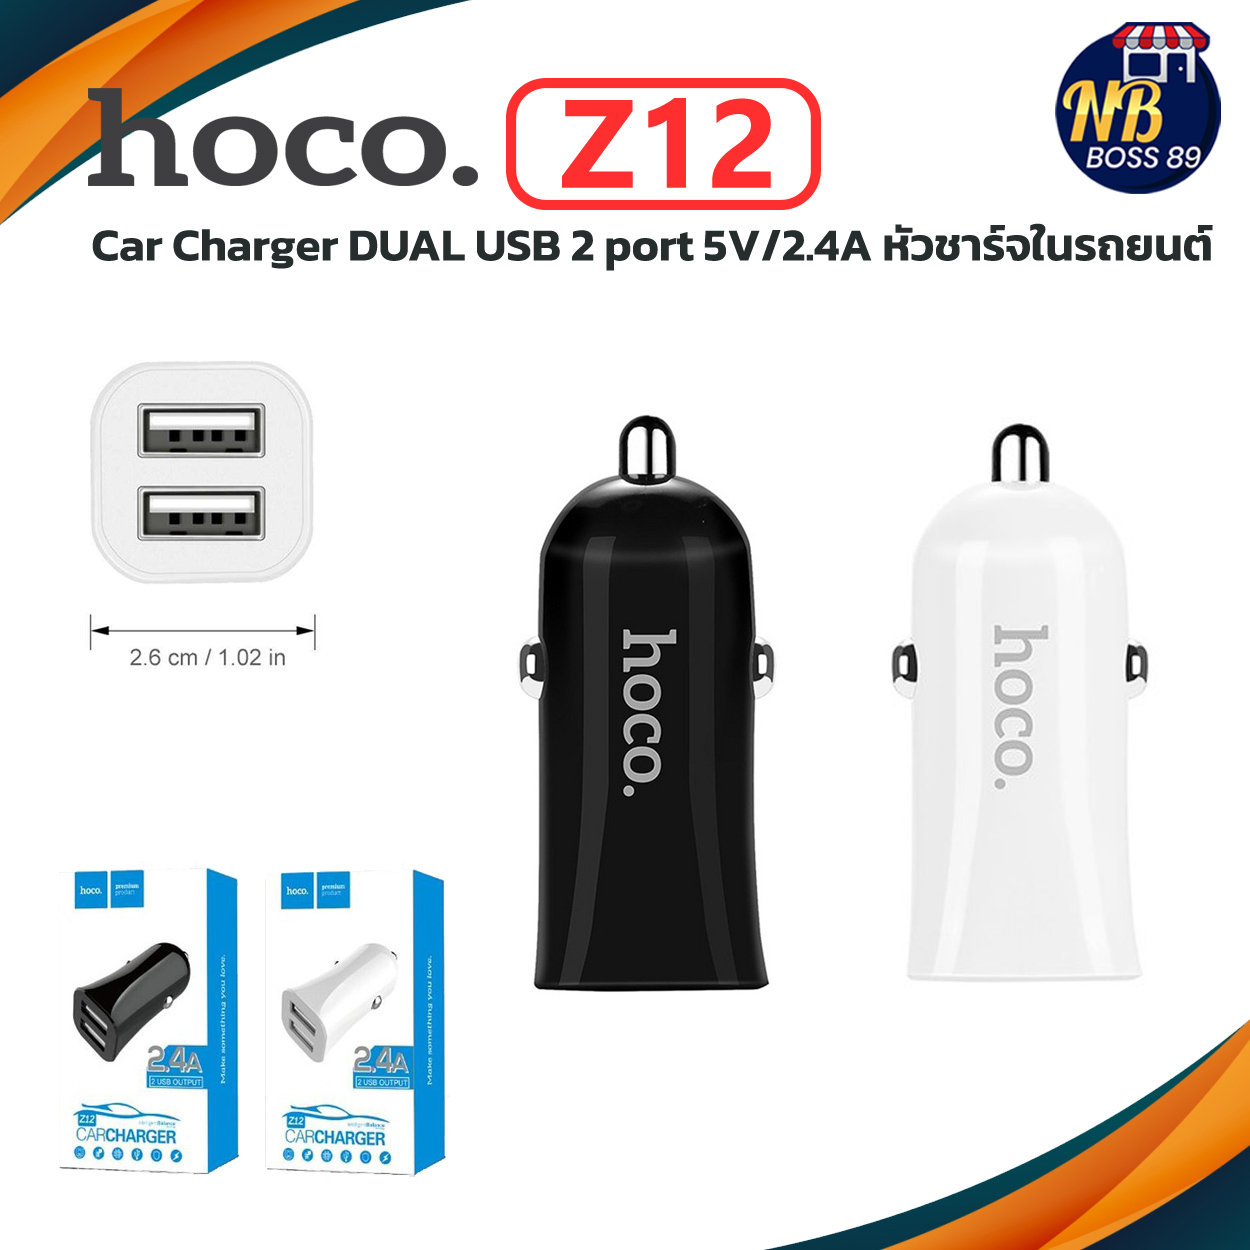 HOCO Z12 ของแท้ 100% Car Charger DUAL USB 2 port 5V/2.4A หัวชาร์จในรถยนต์ ที่ชาร์จในรถชาร์จเร็วแบบ 2 USB NBboss89